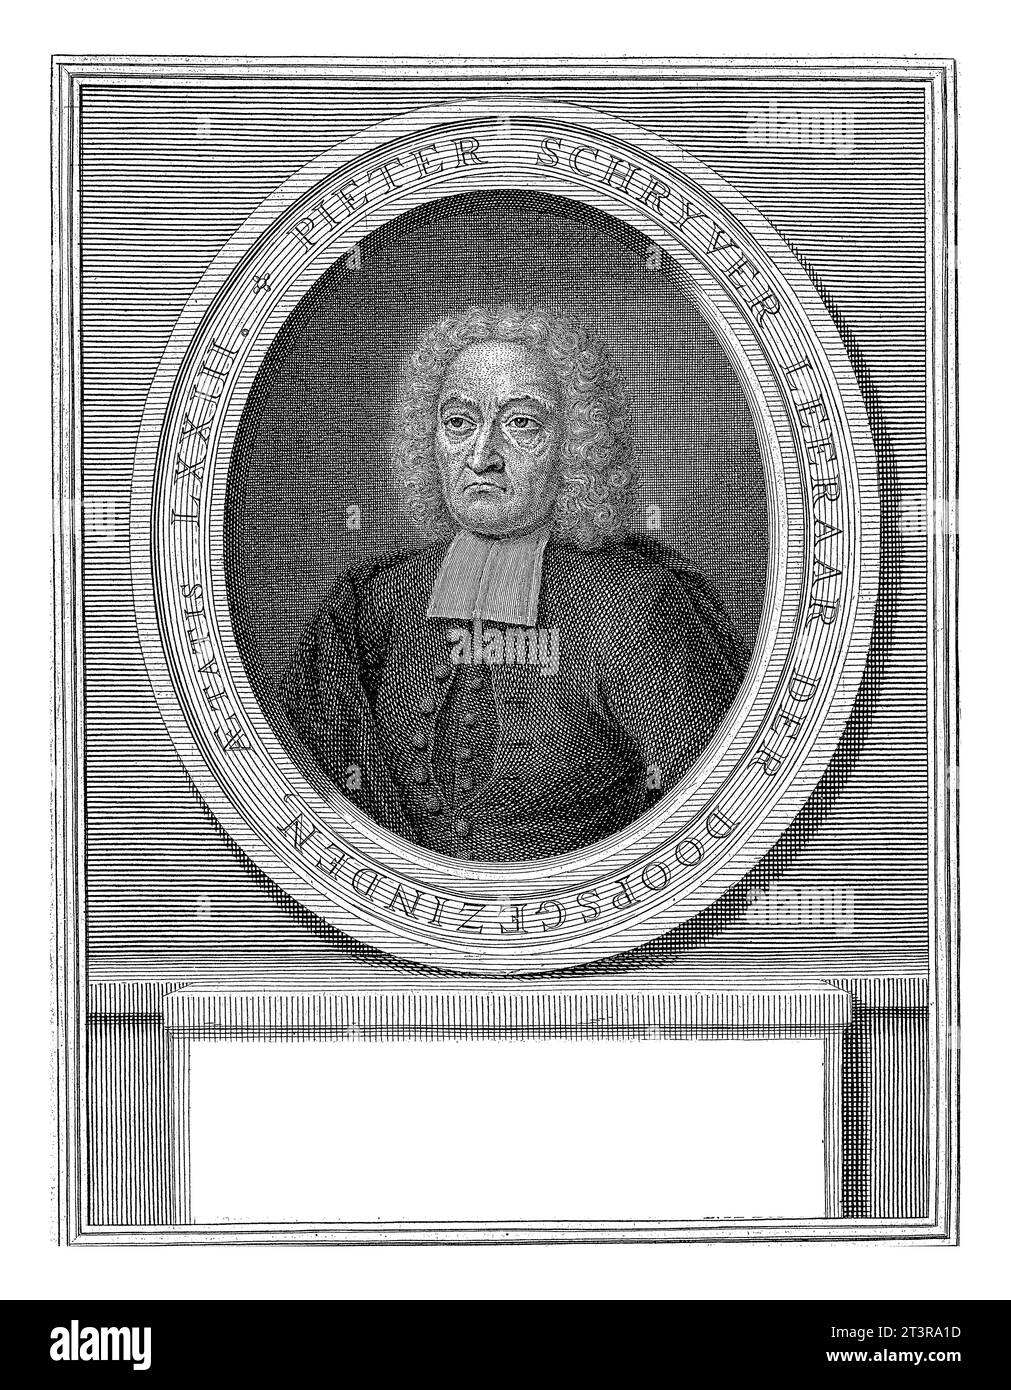 Porträt von Pieter Schrijver, Jacob Folkema, nach Anna Folkema, 1739 Porträt-Büste in Oval links von Prediger Pieter Schrijver, barköpfig. Stockfoto